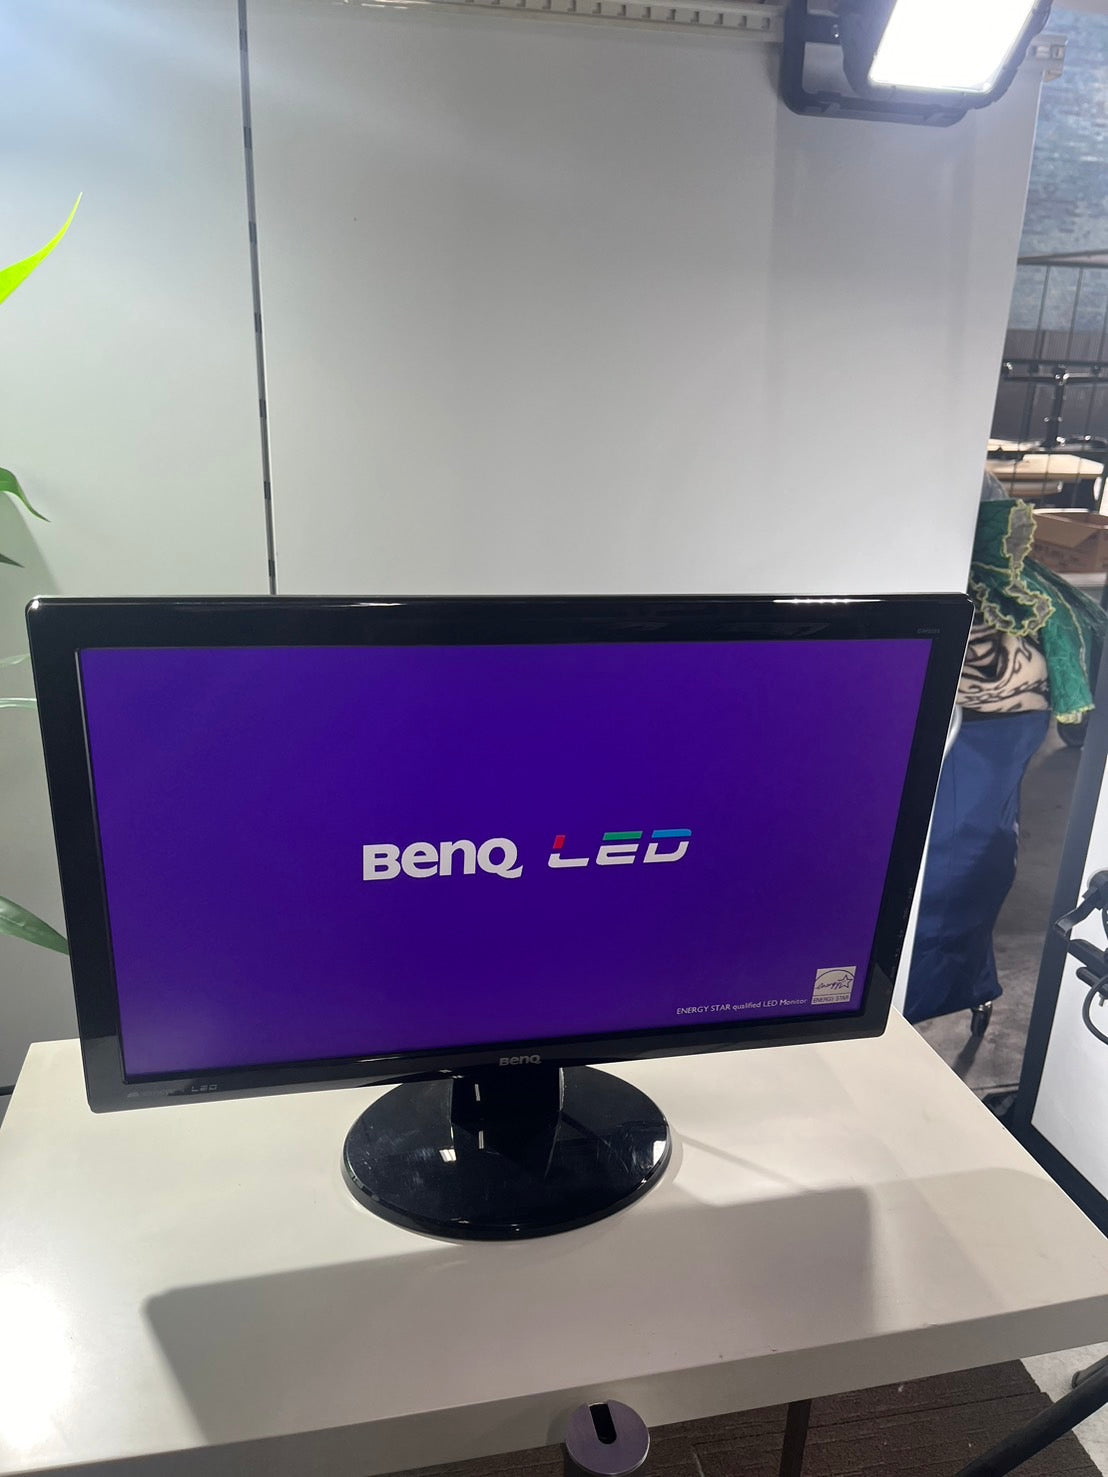 BENQ 21.5インチ モニター ディスプレイ GL2250-B 2013年製 業務用 在宅 格安 通電oK